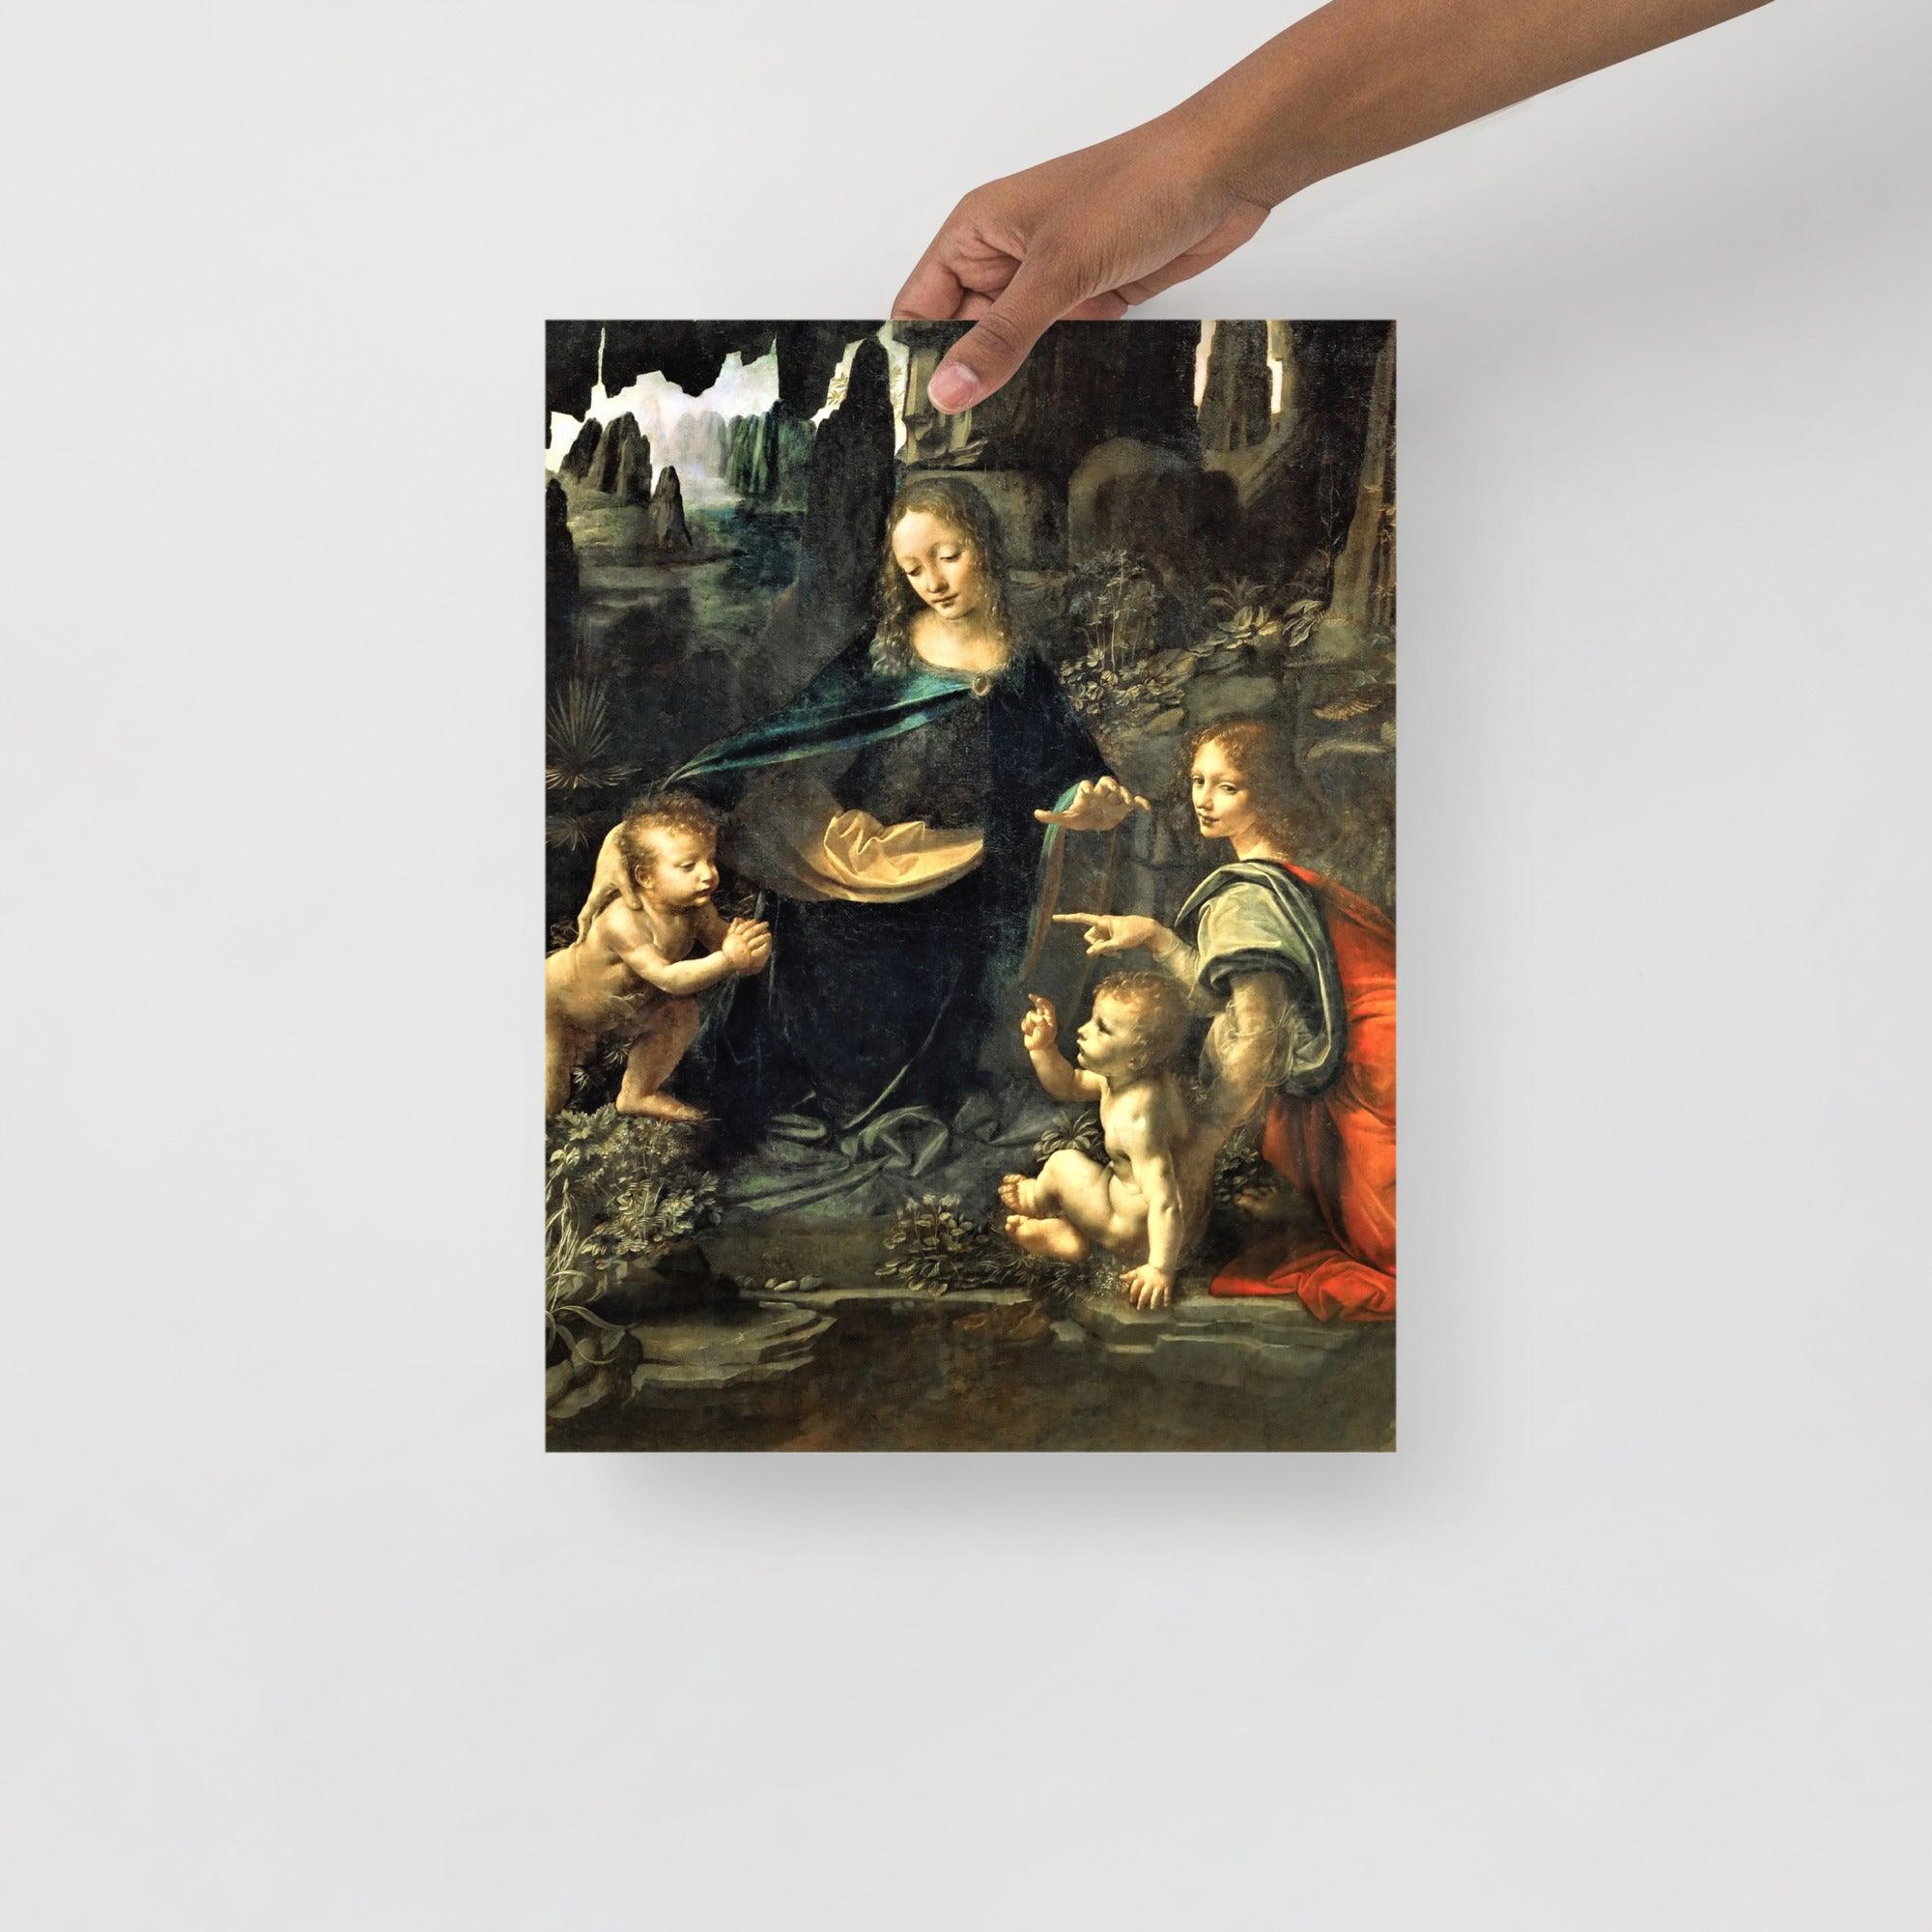 A Virgin of the Rocks by Leonardo Da Vinci  poster on a plain backdrop in size 12x16”.